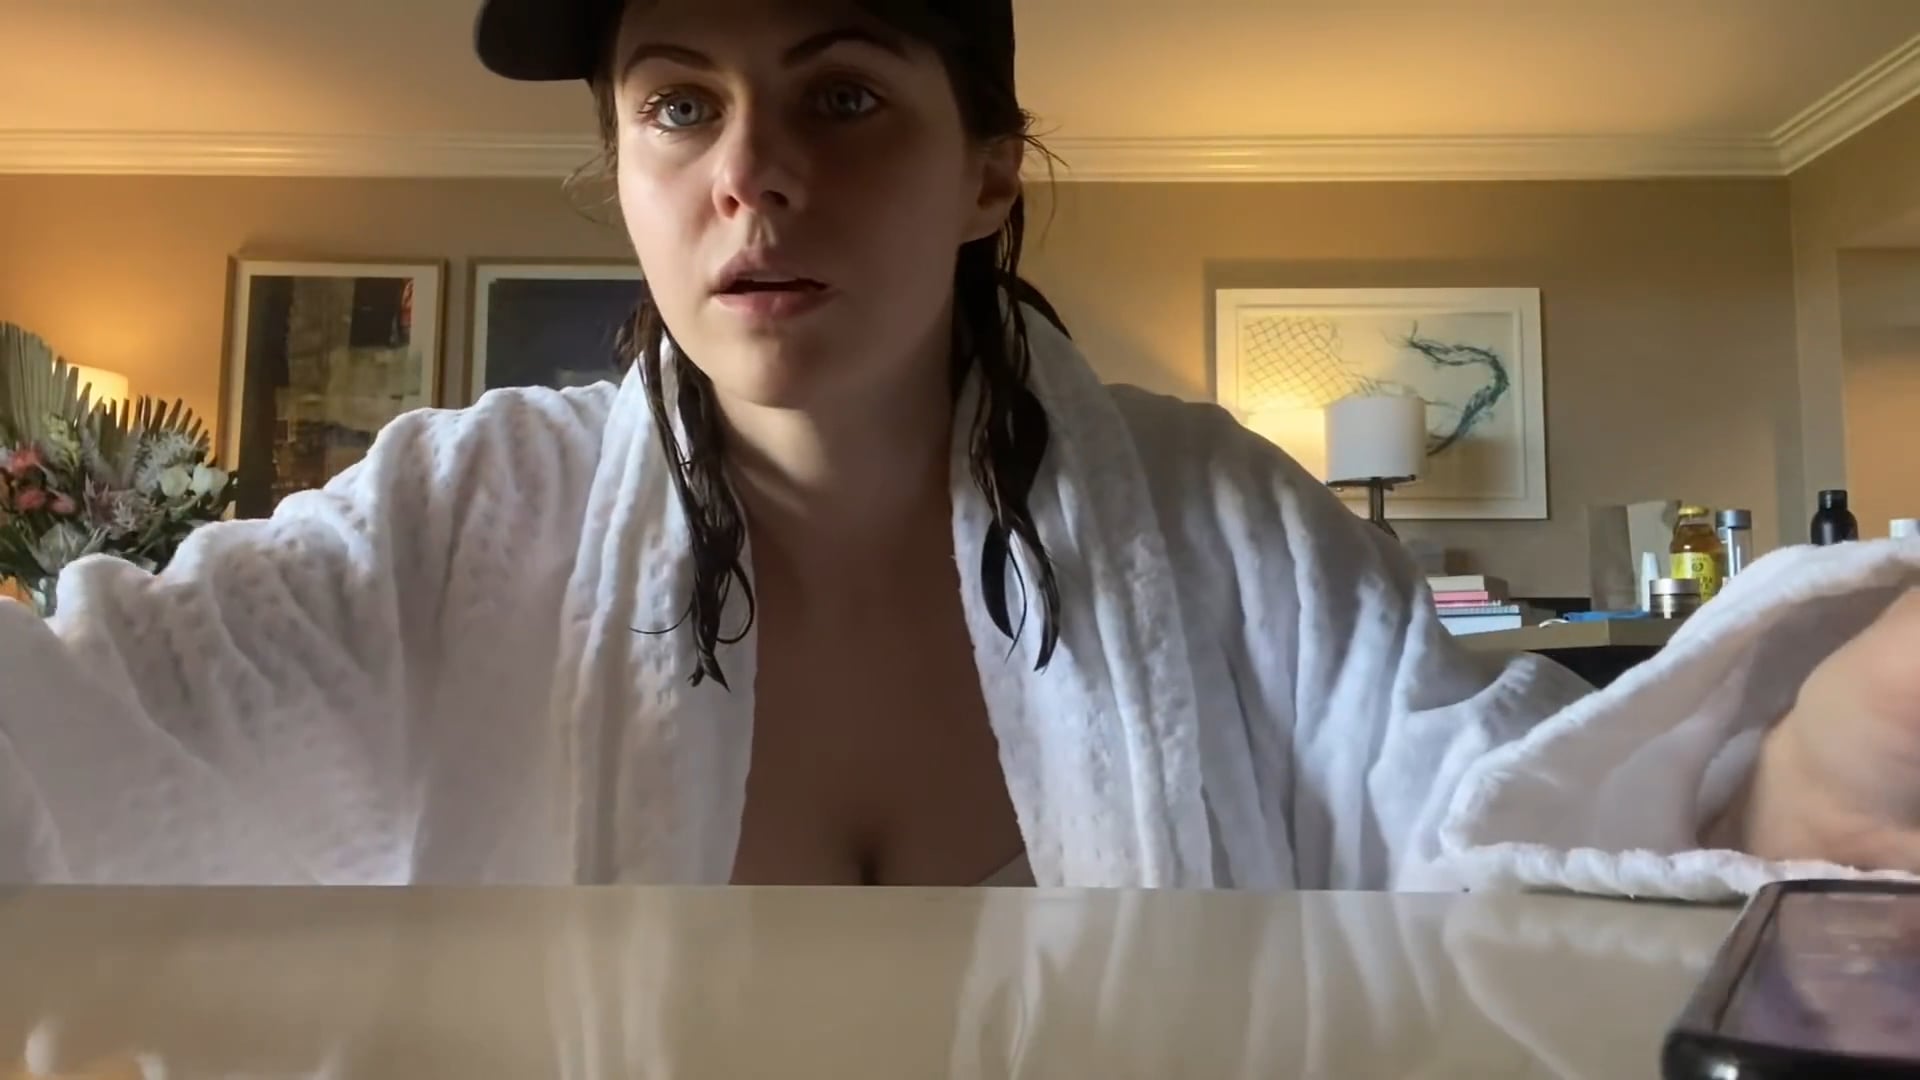 Alexandra Daddario in bikini & robe in YouTube video Nude